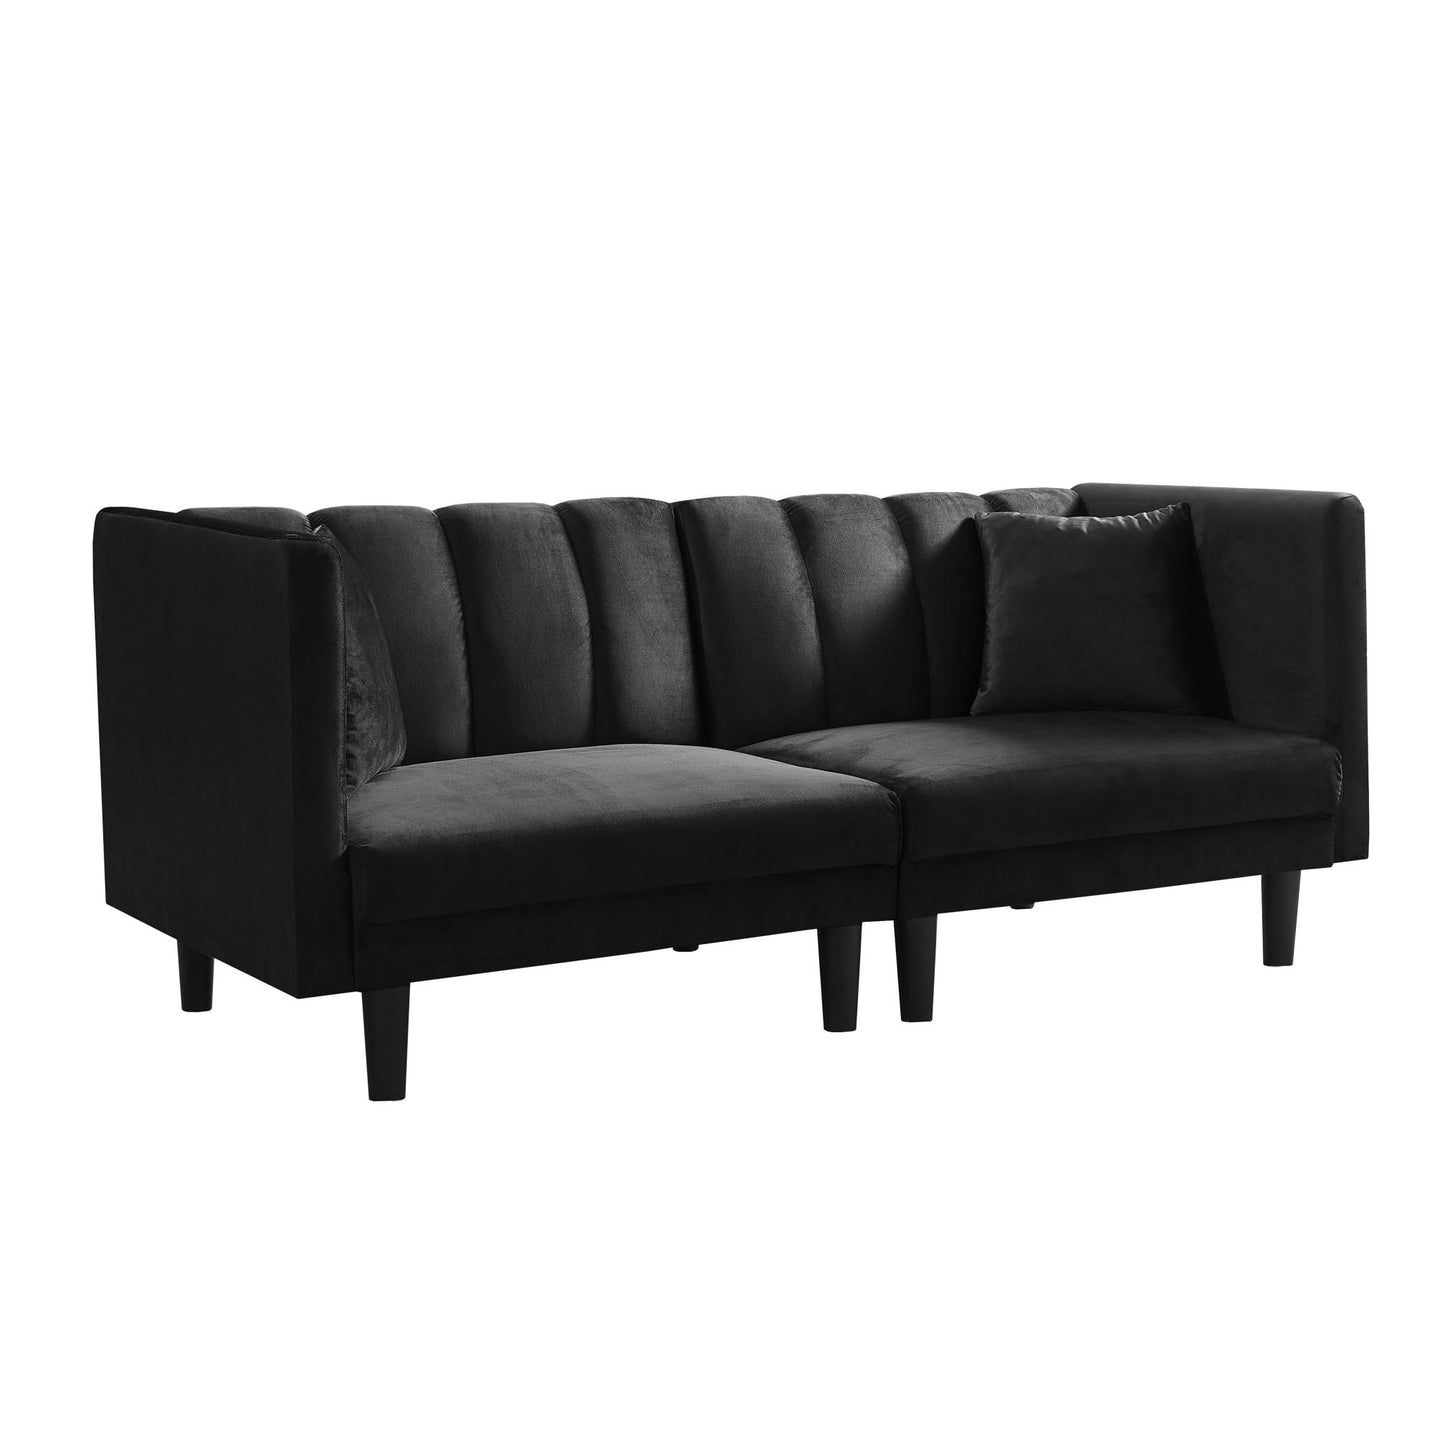 70.8” Futon Sofa bed（plastic legs）